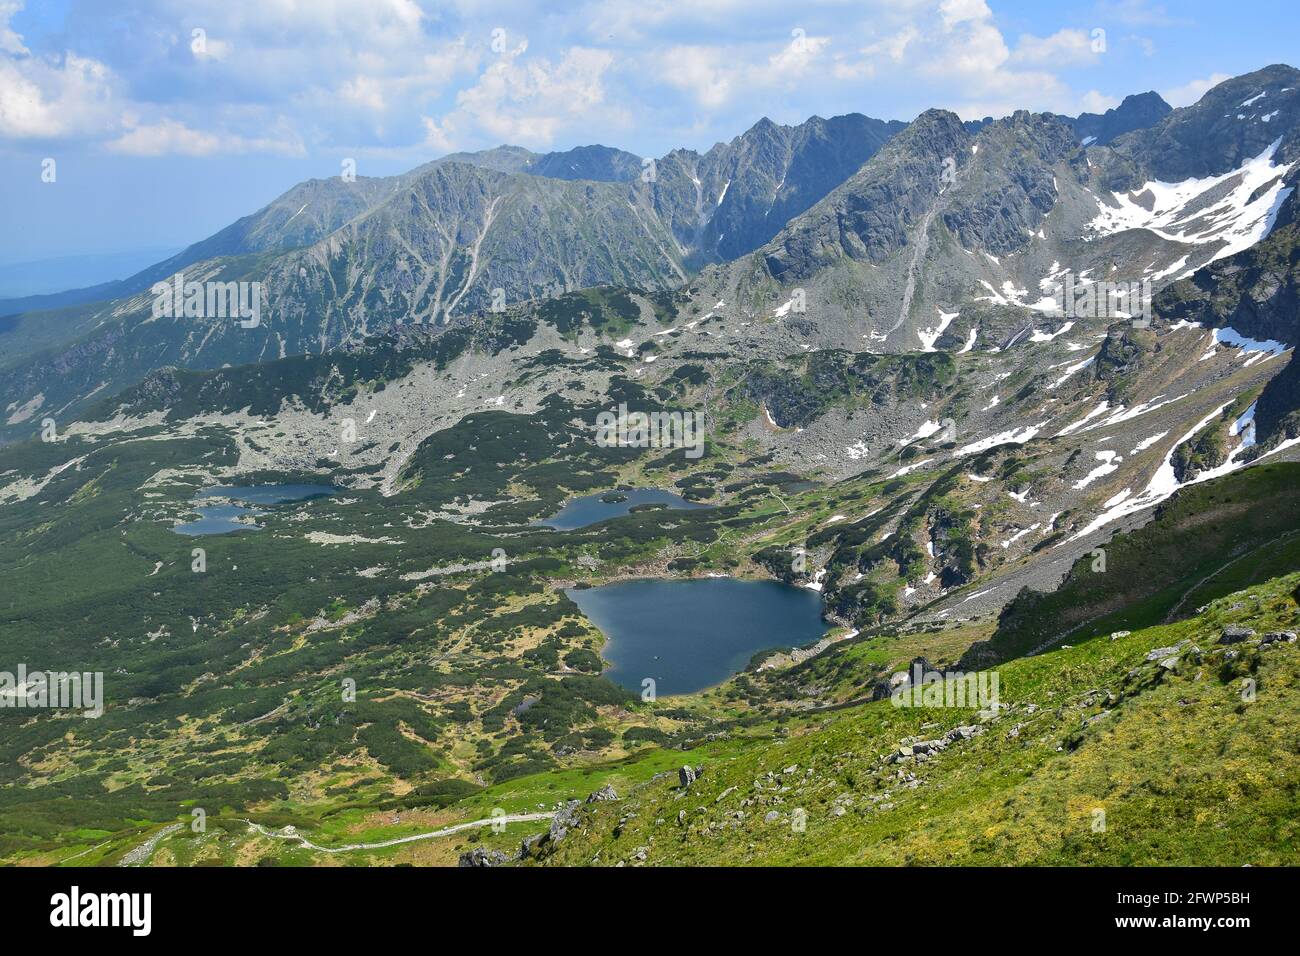 Vue du mont Kasprov Vrch aux lacs Zielony Staw, Kurtkowiec et Dlugi Staw, entouré par les montagnes du Haut Tatra. Pologne. Banque D'Images